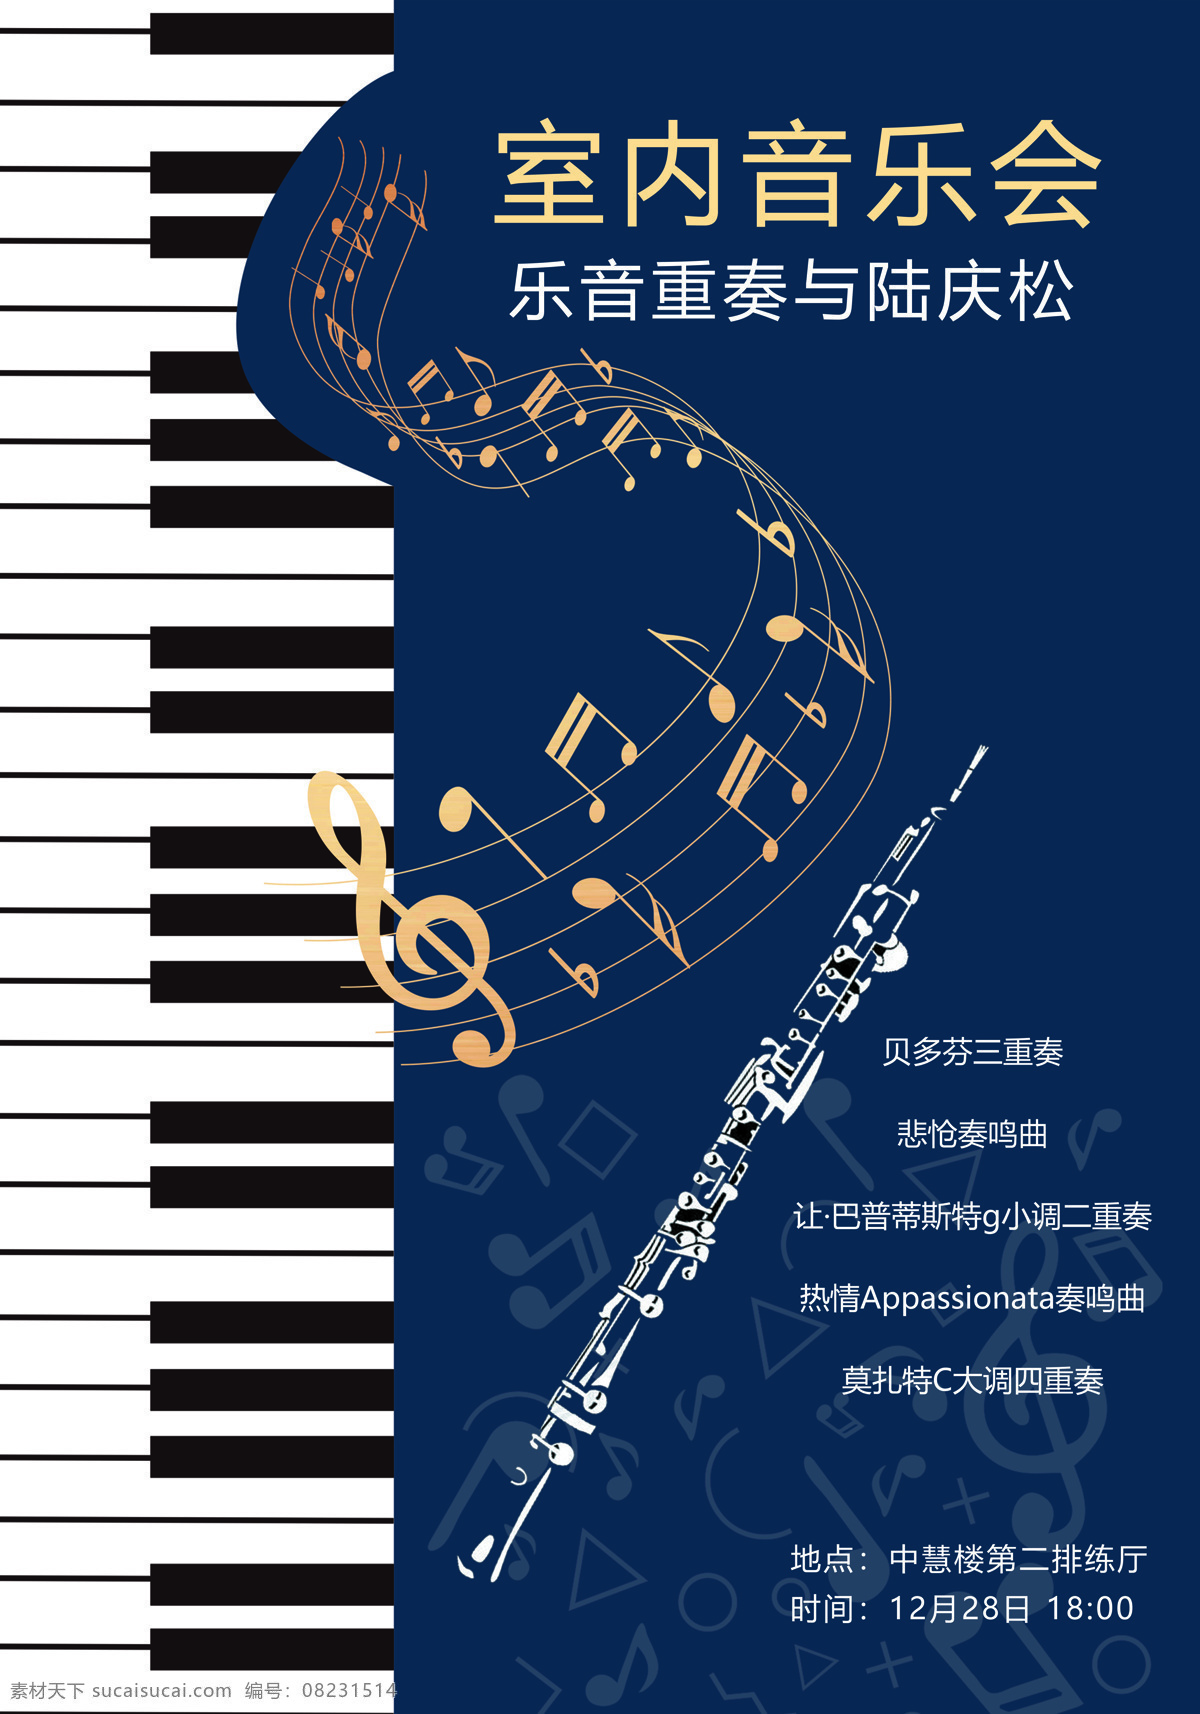 钢琴 音乐表演 海报 表演 音乐 演奏会 室内音乐会 文化艺术 舞蹈音乐